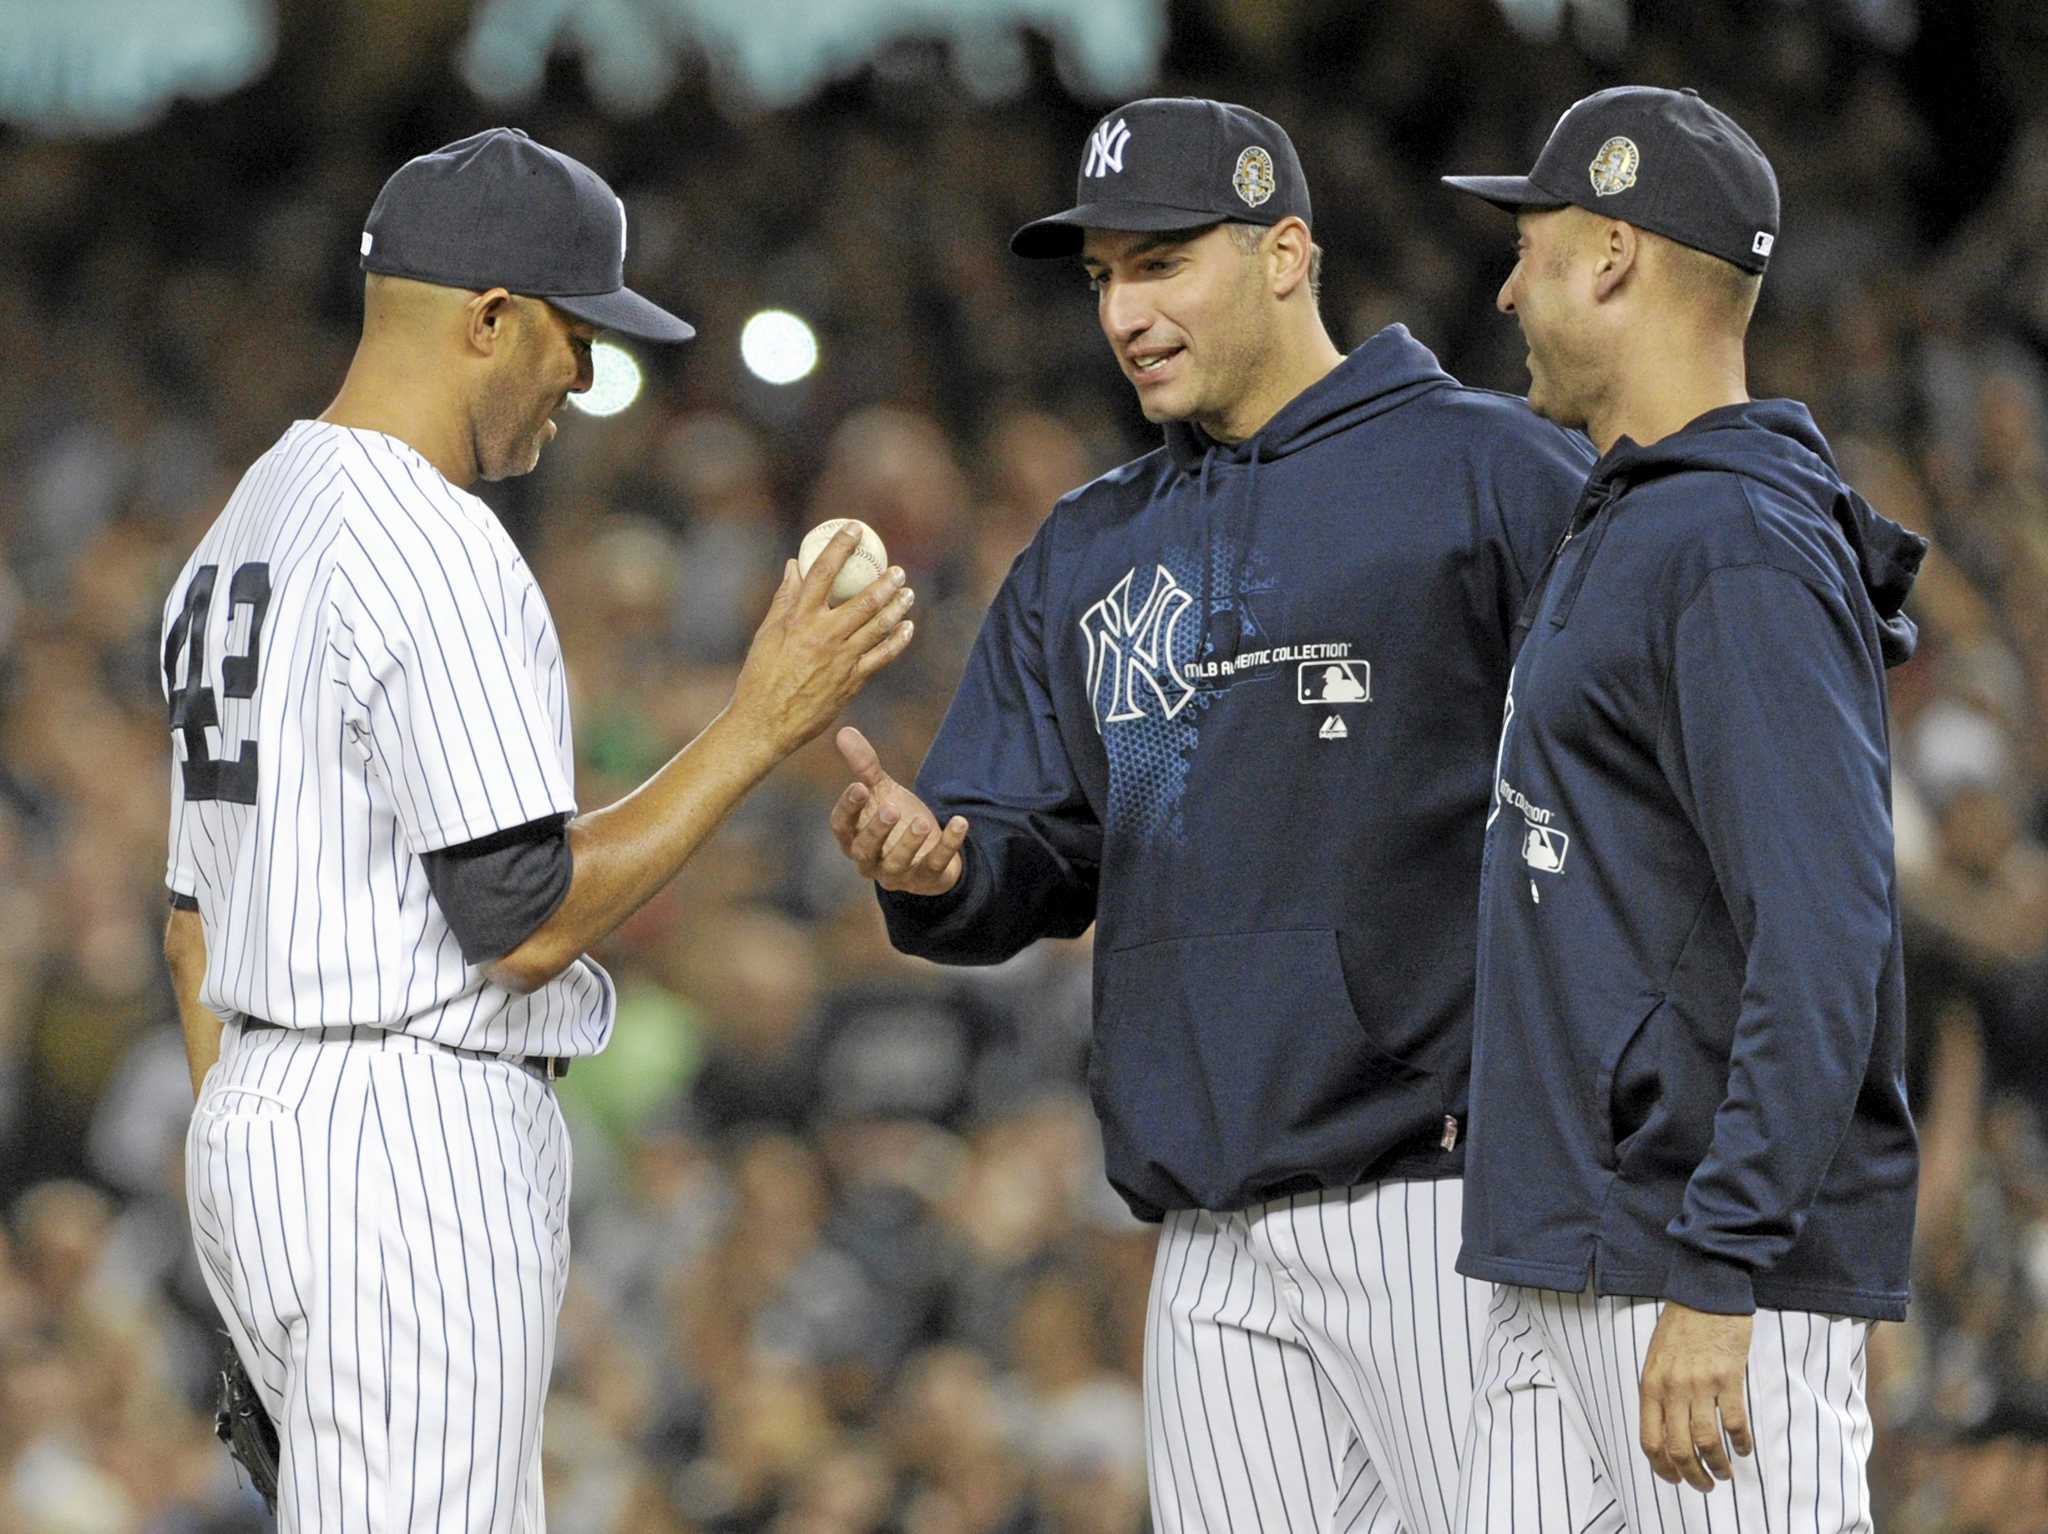 Mariano Rivera bids goodbye to New York Yankees